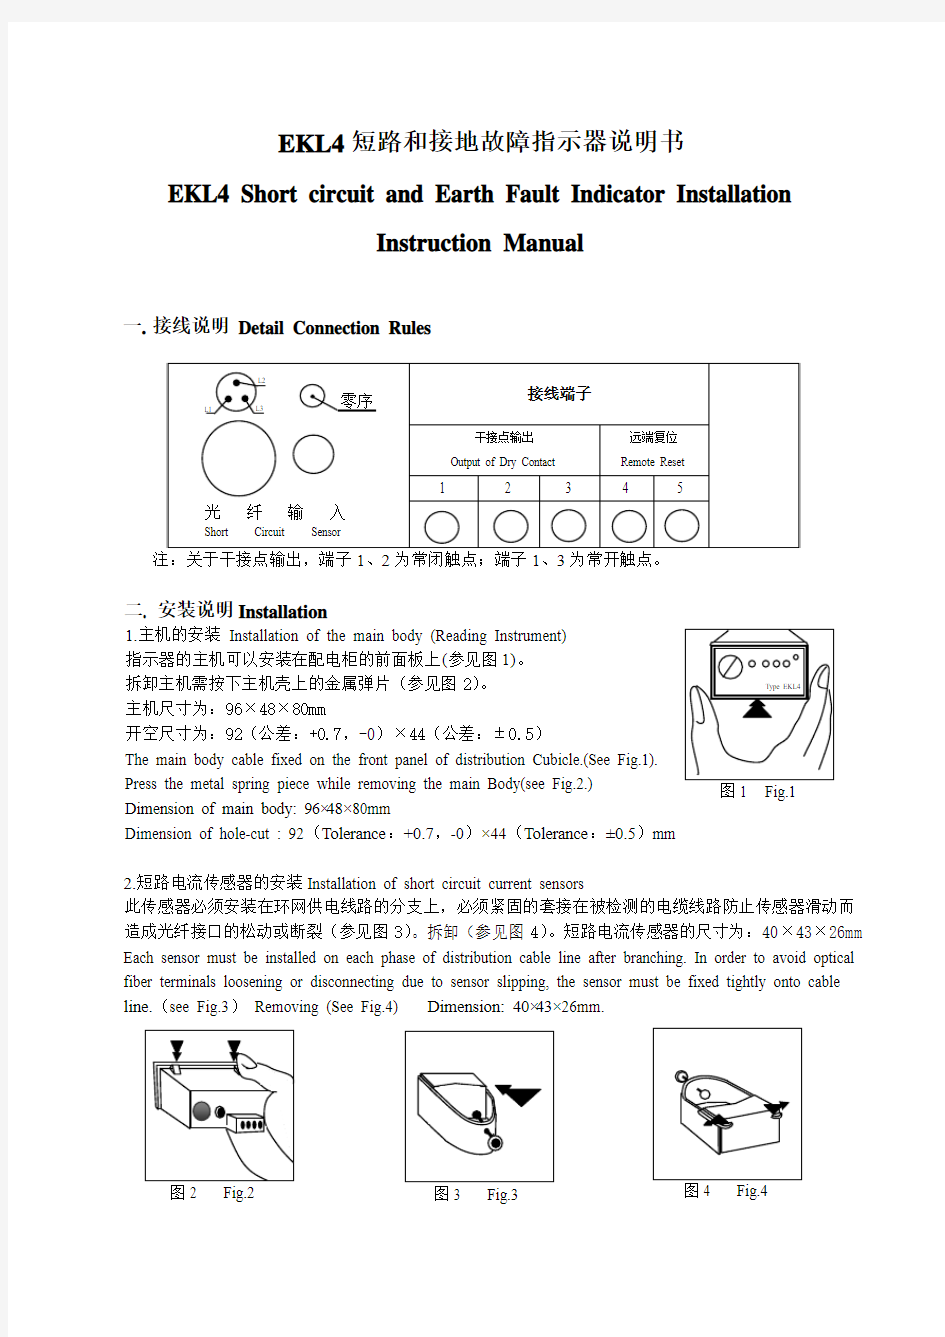 EKL4型短路故障指示器安装使用说明书(简版)--北京恒源利通电力技术有限公司